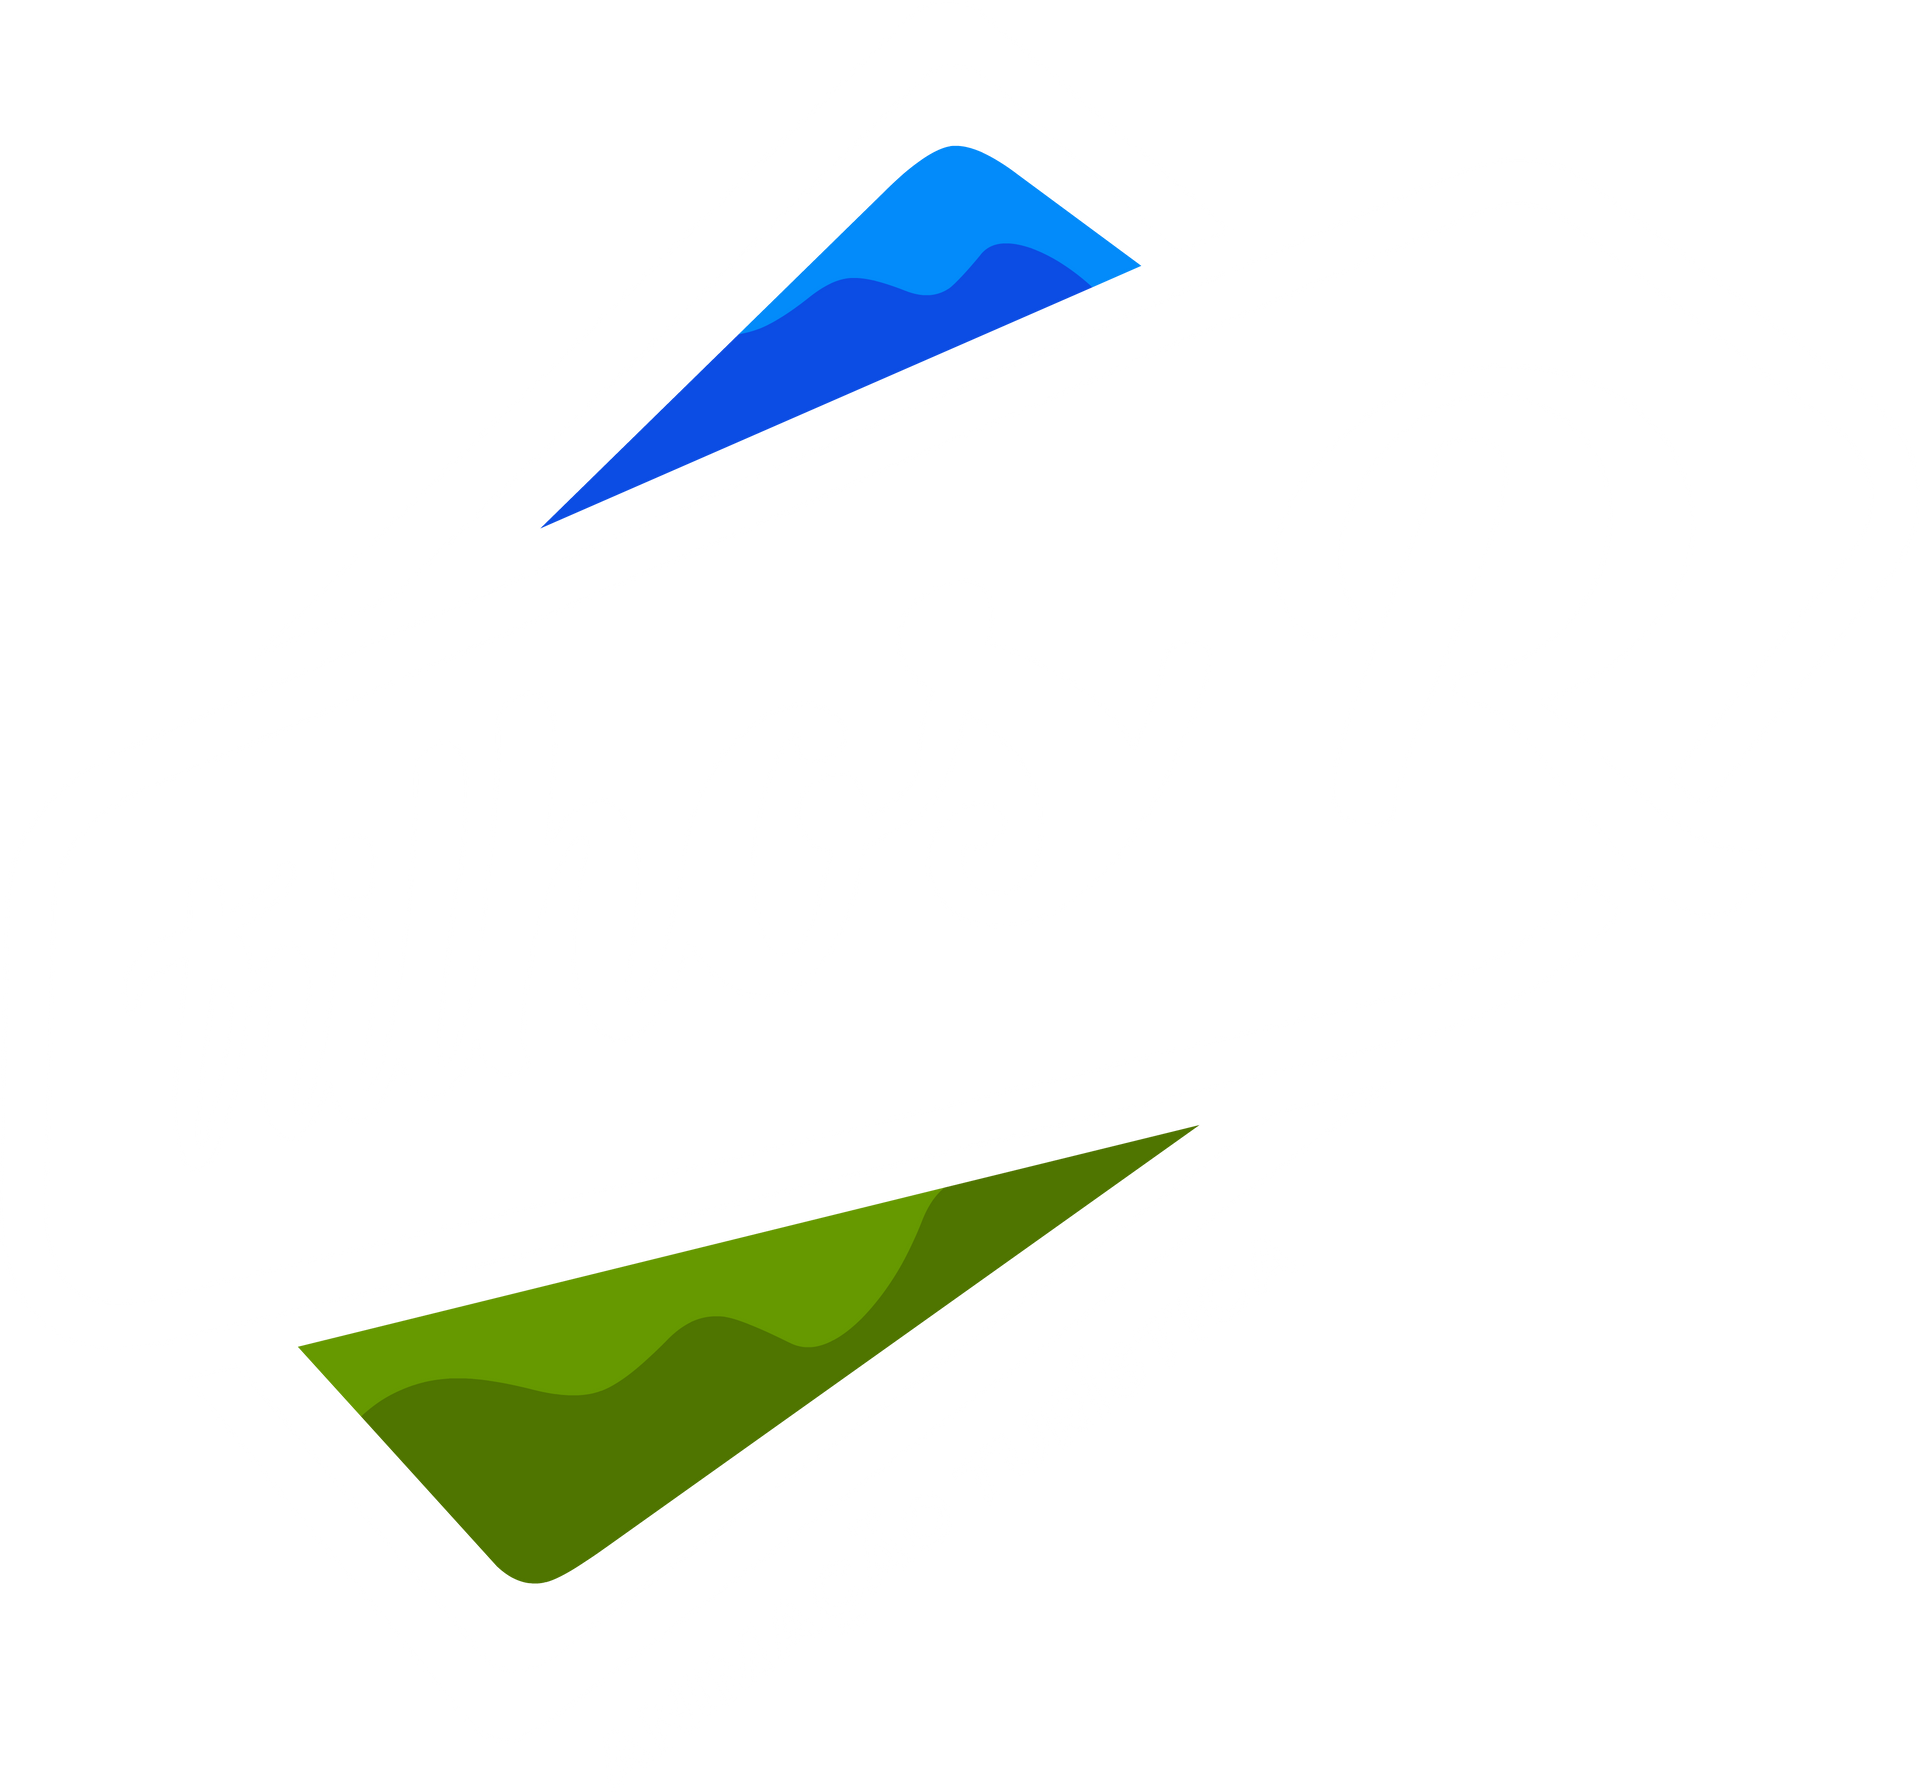 Logotipo Trilhos R - Azores Tours